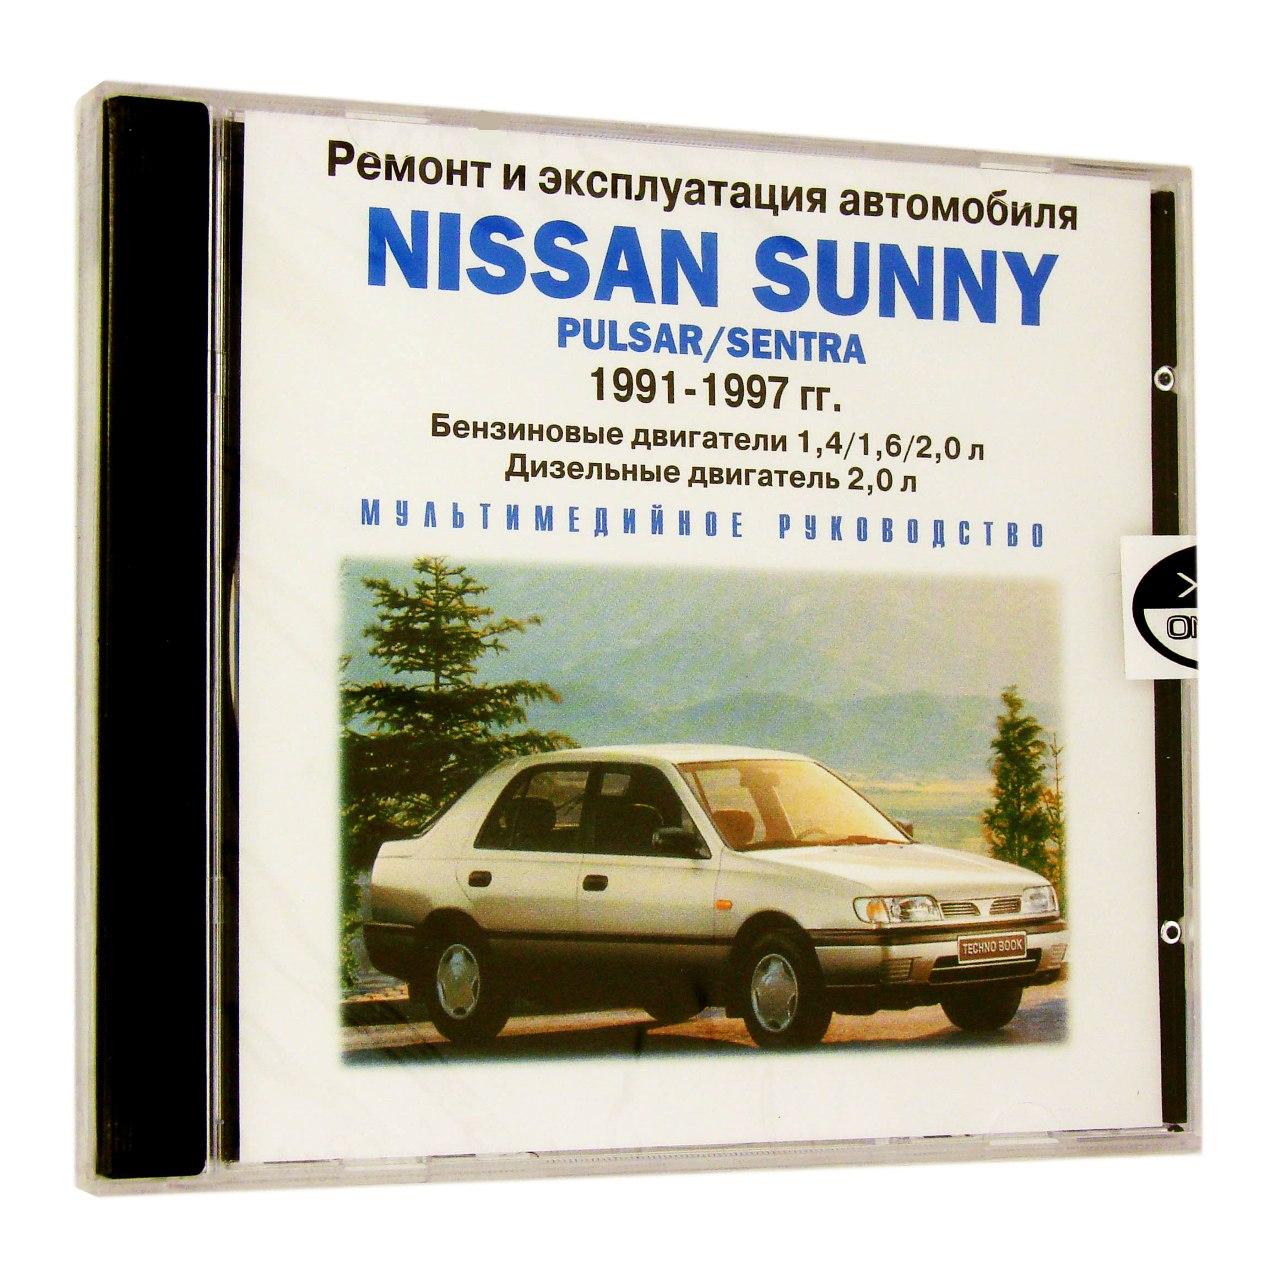 Компьютерный компакт-диск Nissan Sunny 1991-1997 гг.: ремонт и эксплуатация автомобиля (ПК), фирма RMG Multimedia, 1CD